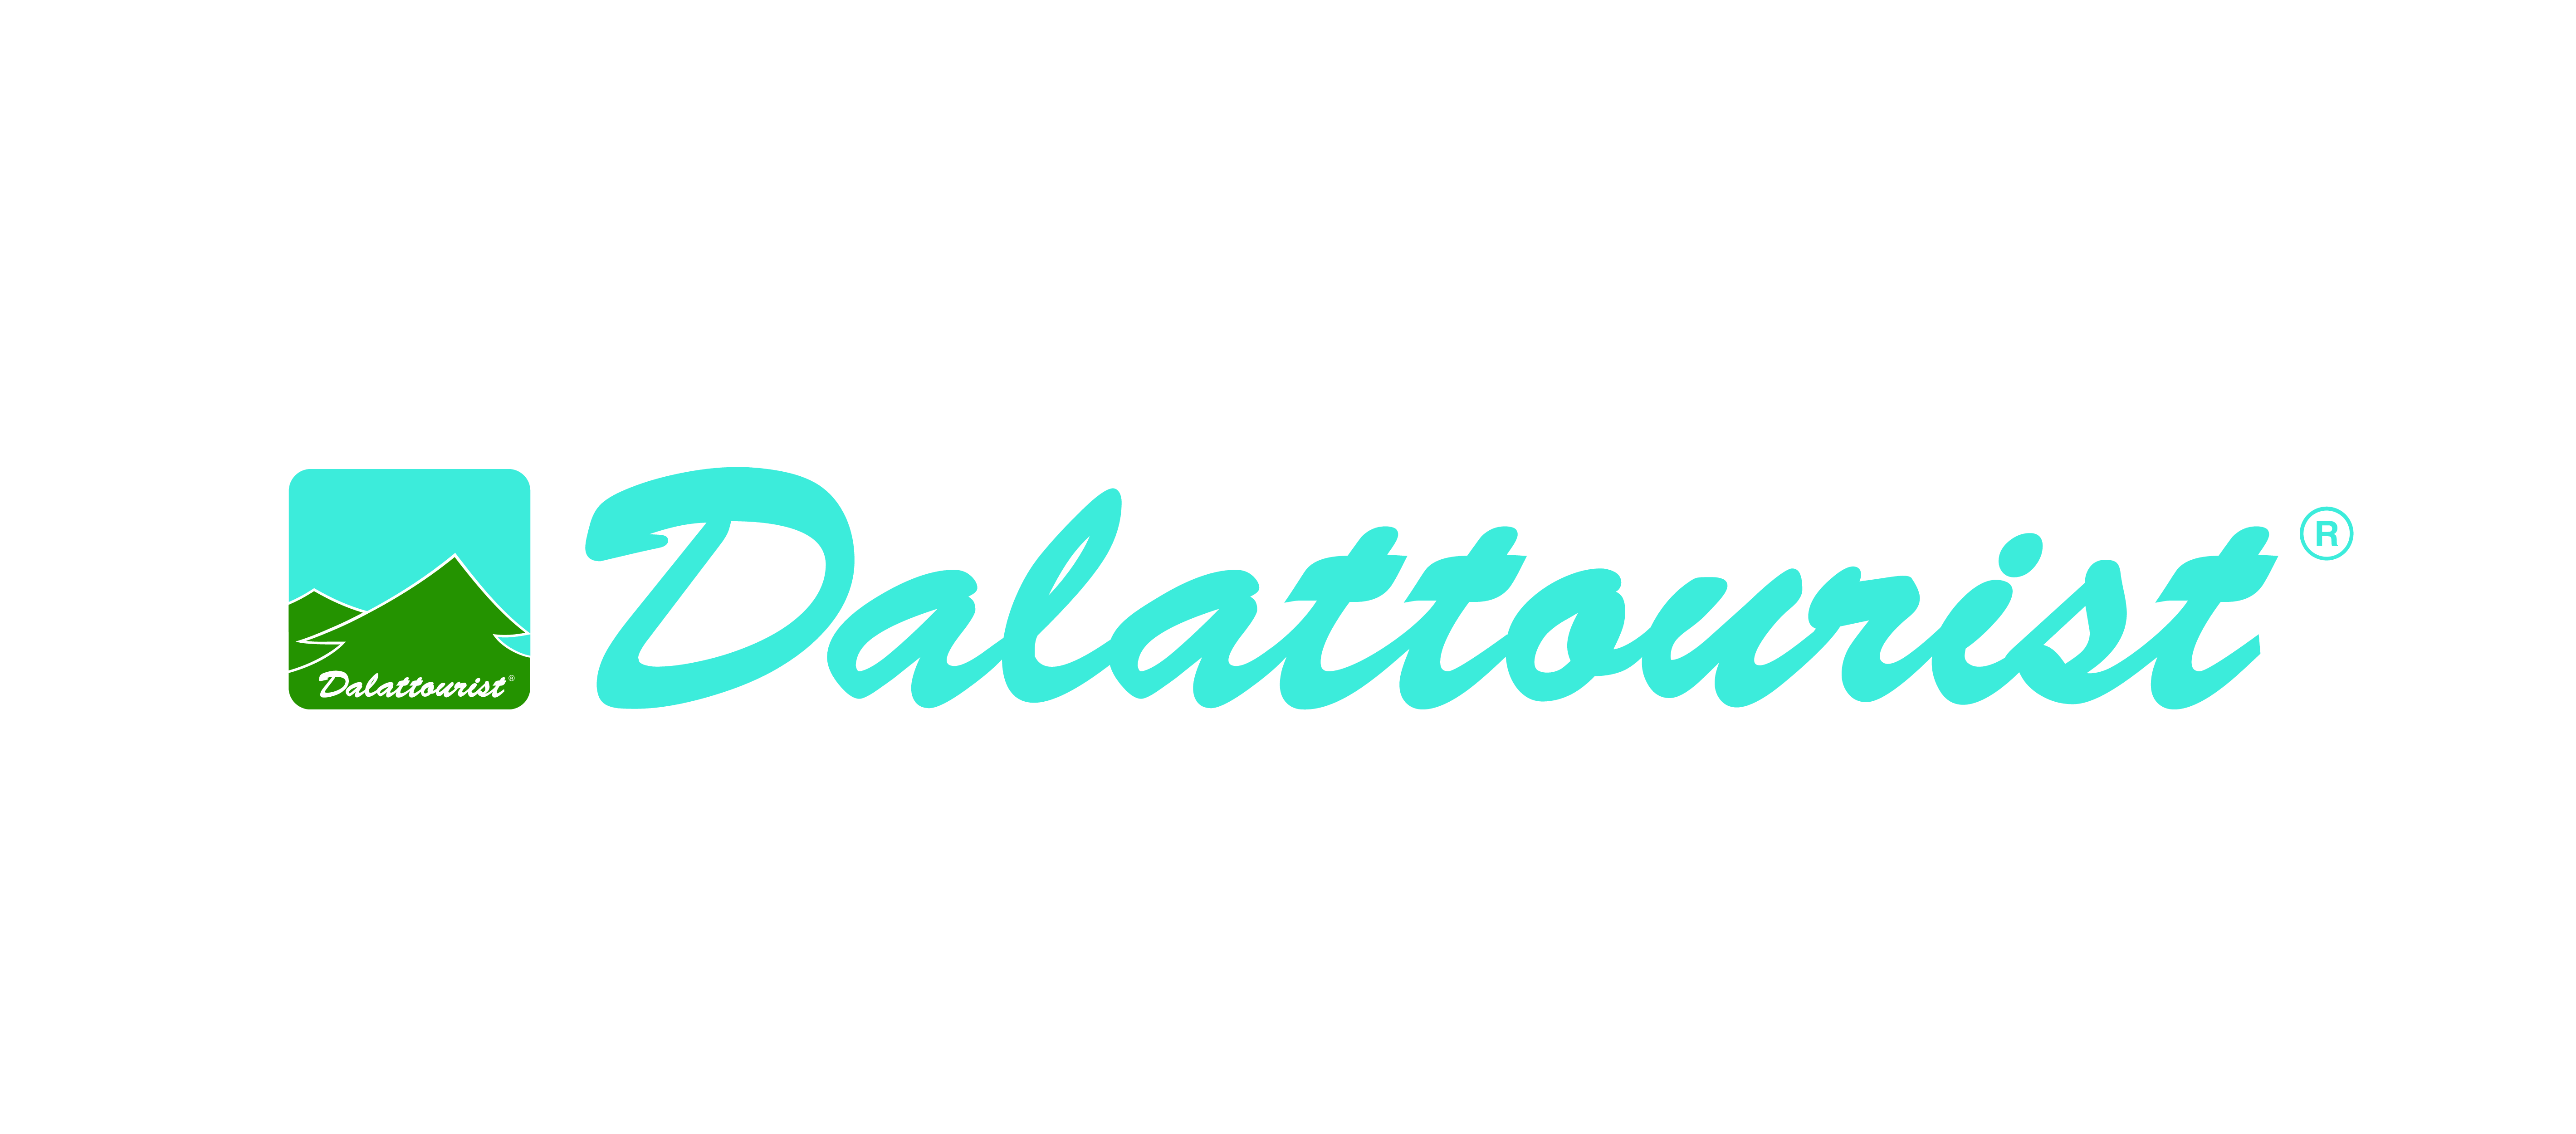 LAM DONG TOURIST JOINT STOCK COMPANY – DALATTOURIST